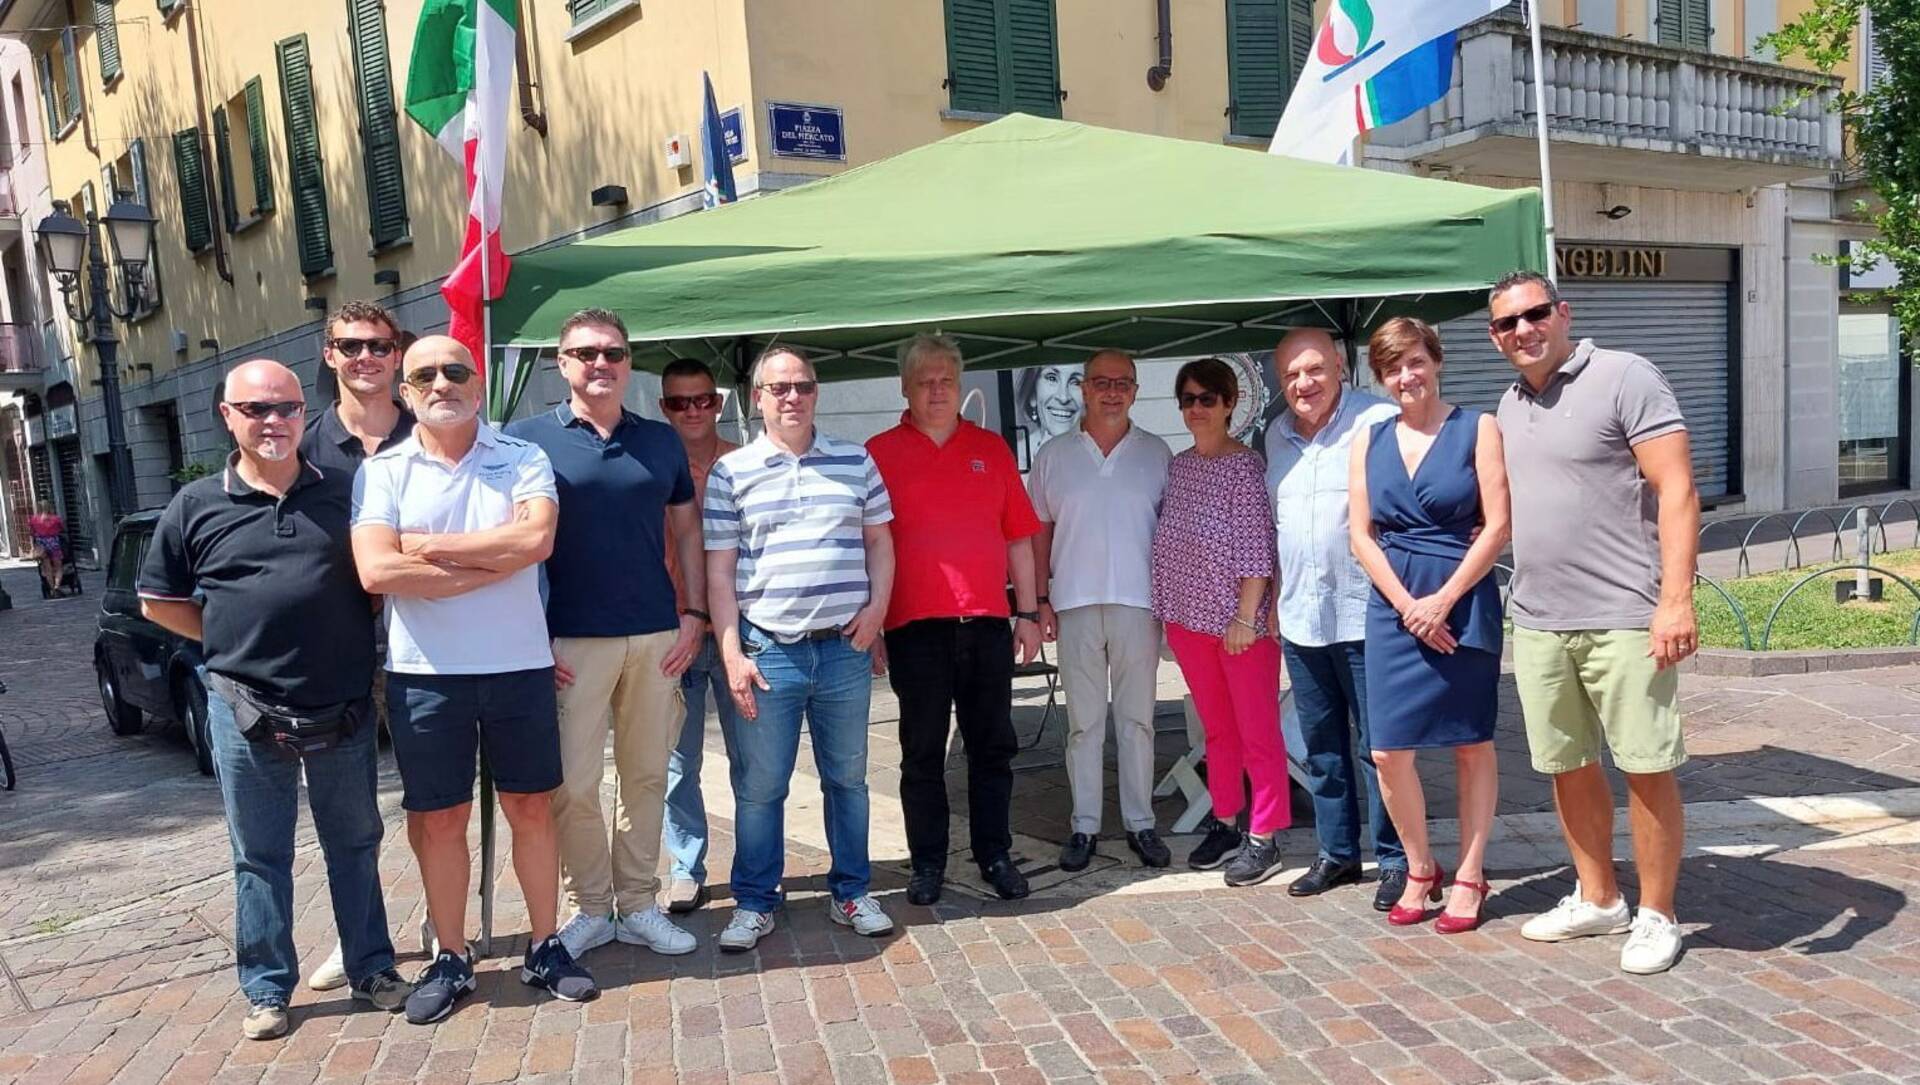 Saronno, Fratelli d’Italia in piazza per incontrare i cittadini: “Al lavoro all’insegna della coerenza”